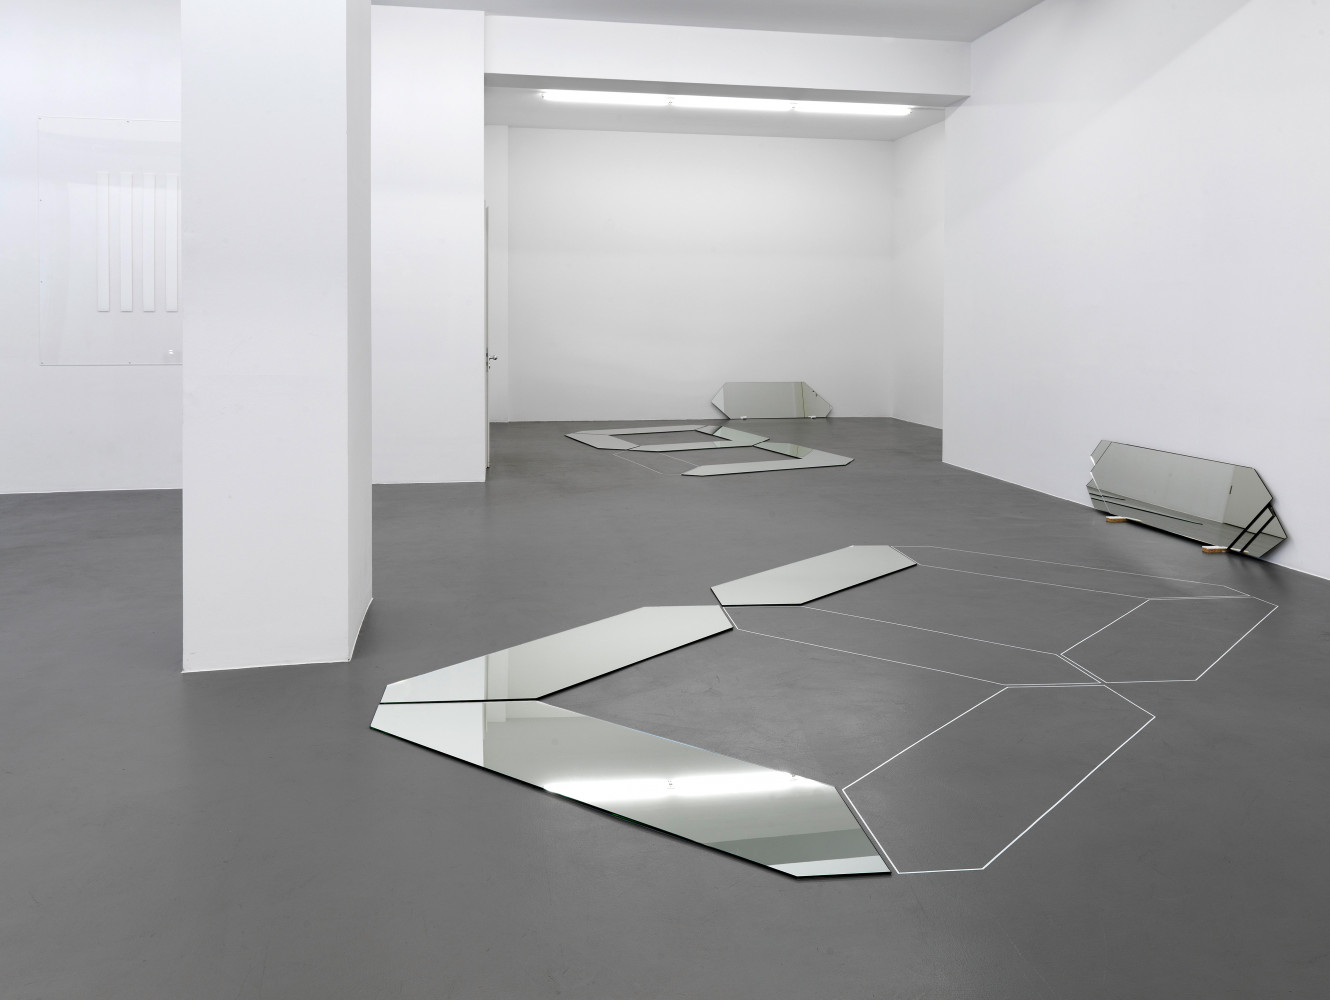 Installationsansicht, Buchmann Galerie, 2012